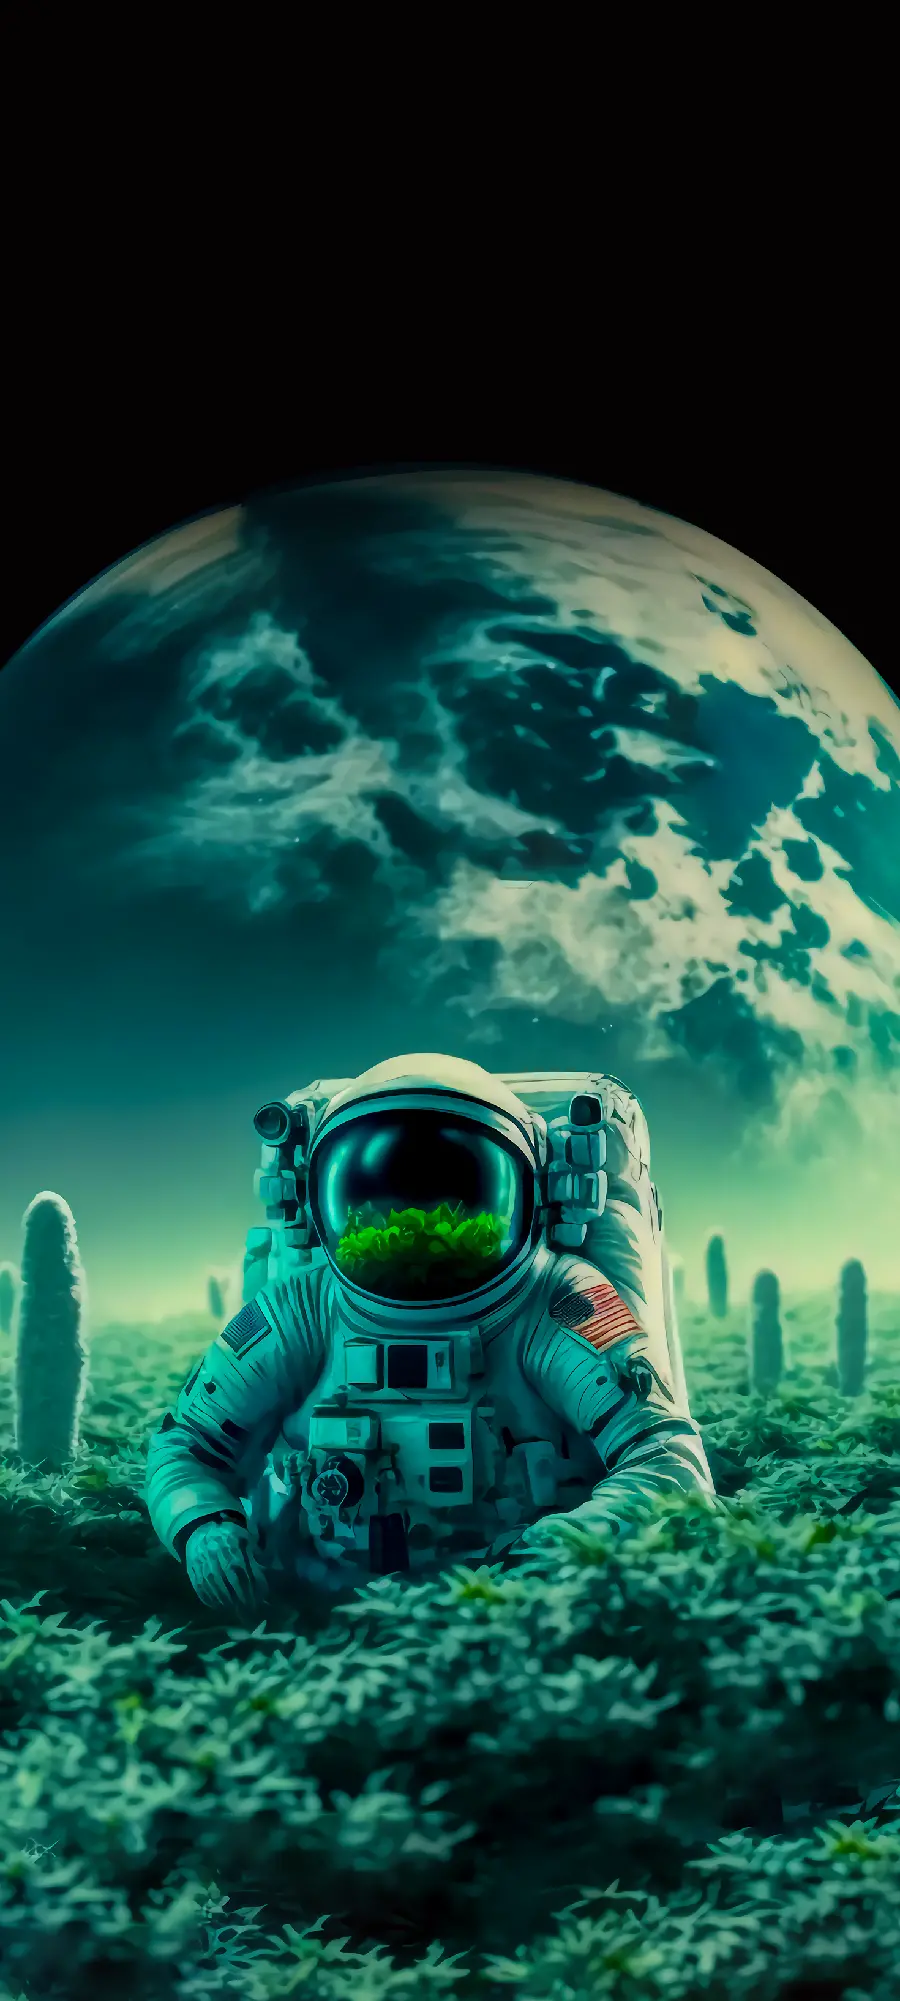 عکس بامزه و خوشگل هوش مصنوعی از فضانورد ناسا در کنار باغ گل و سبزی در سیاره دورافتاده برای والپیپر افراد خاص